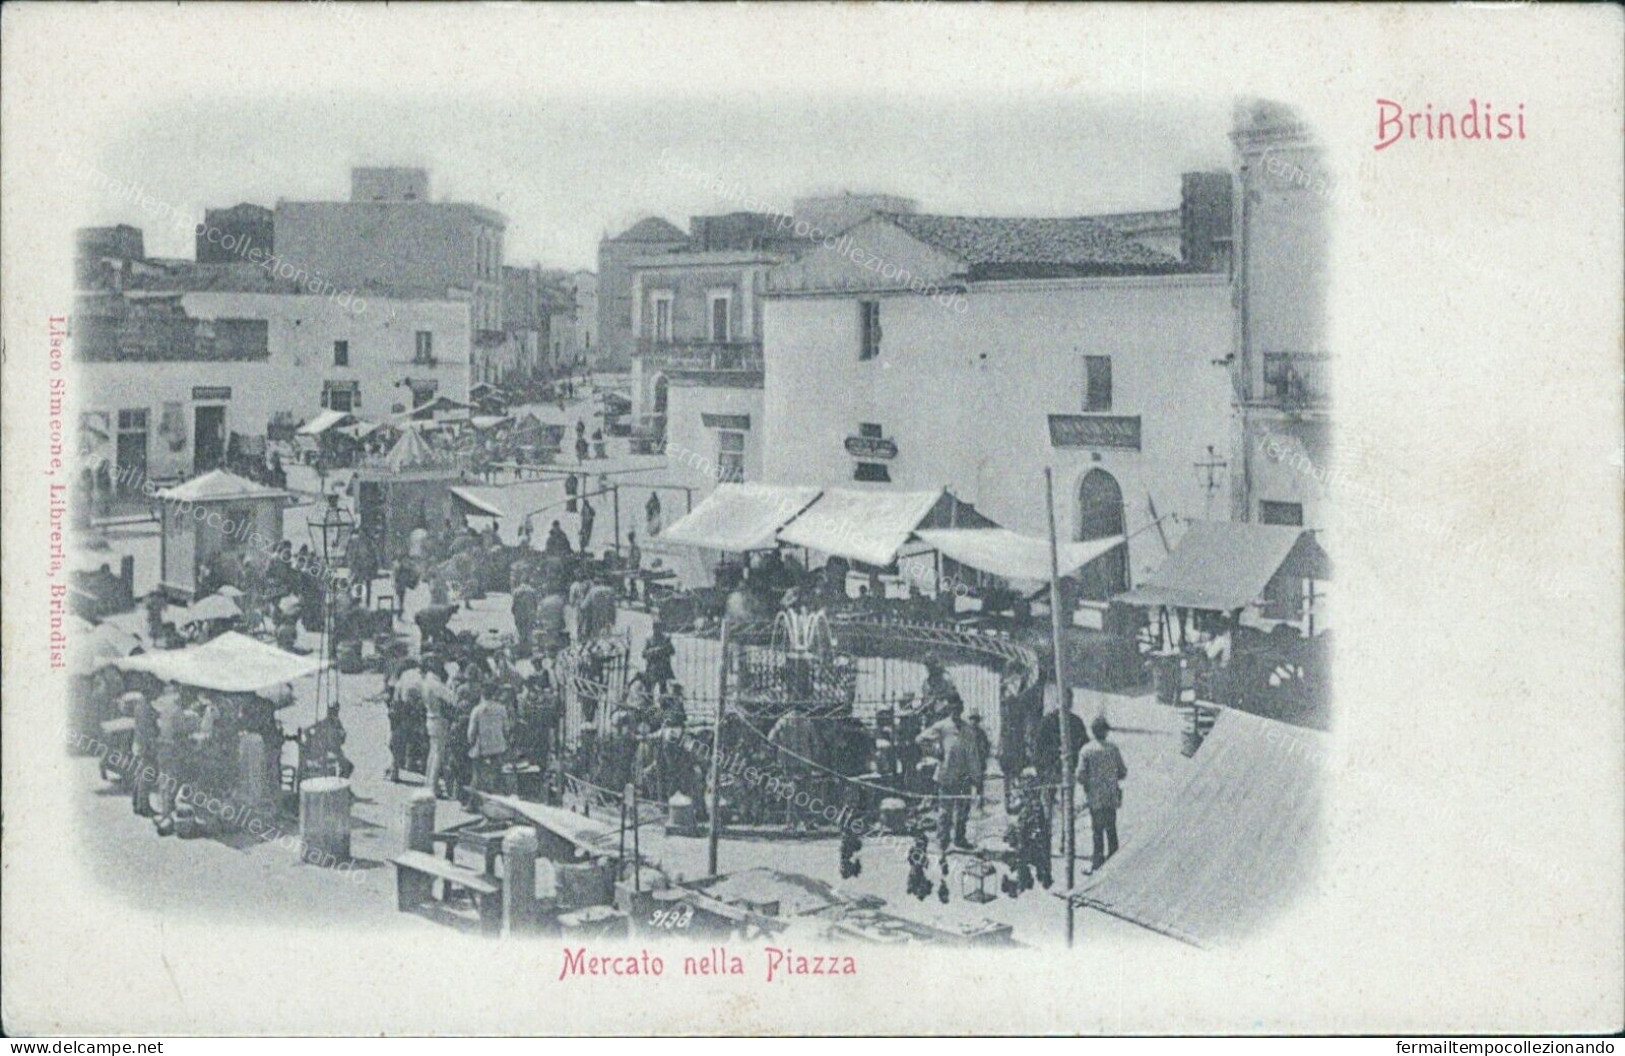 Cp107 Cartolina Brindisi  Citta'mercato Nella Piazza Inizio 900 Puglia - Brindisi